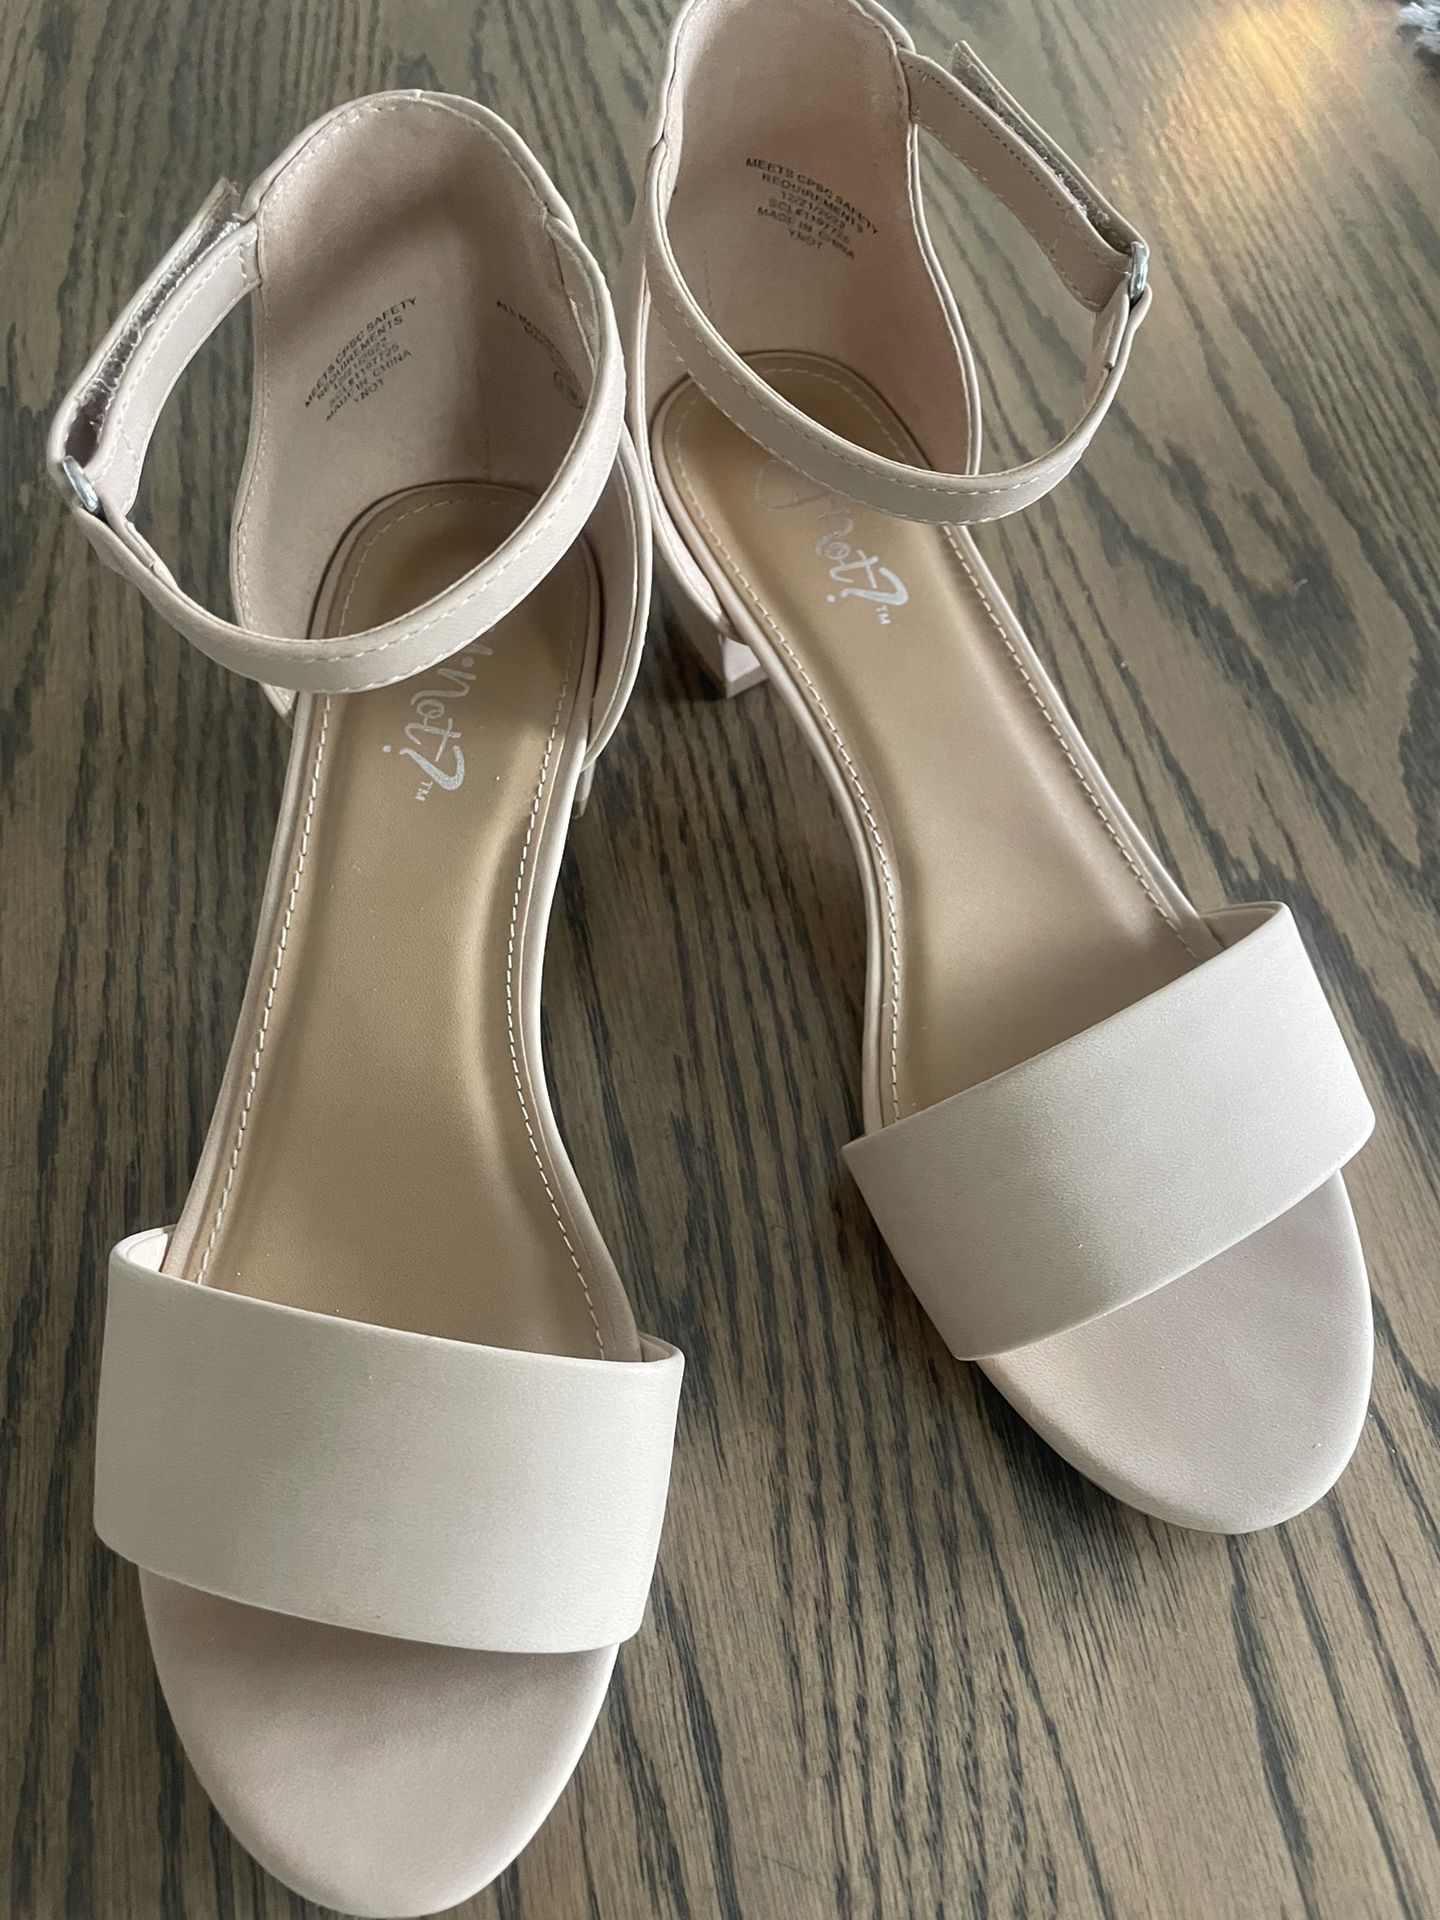 Girls Dress Shoes Size 4.5 (women’s 6-6.5)